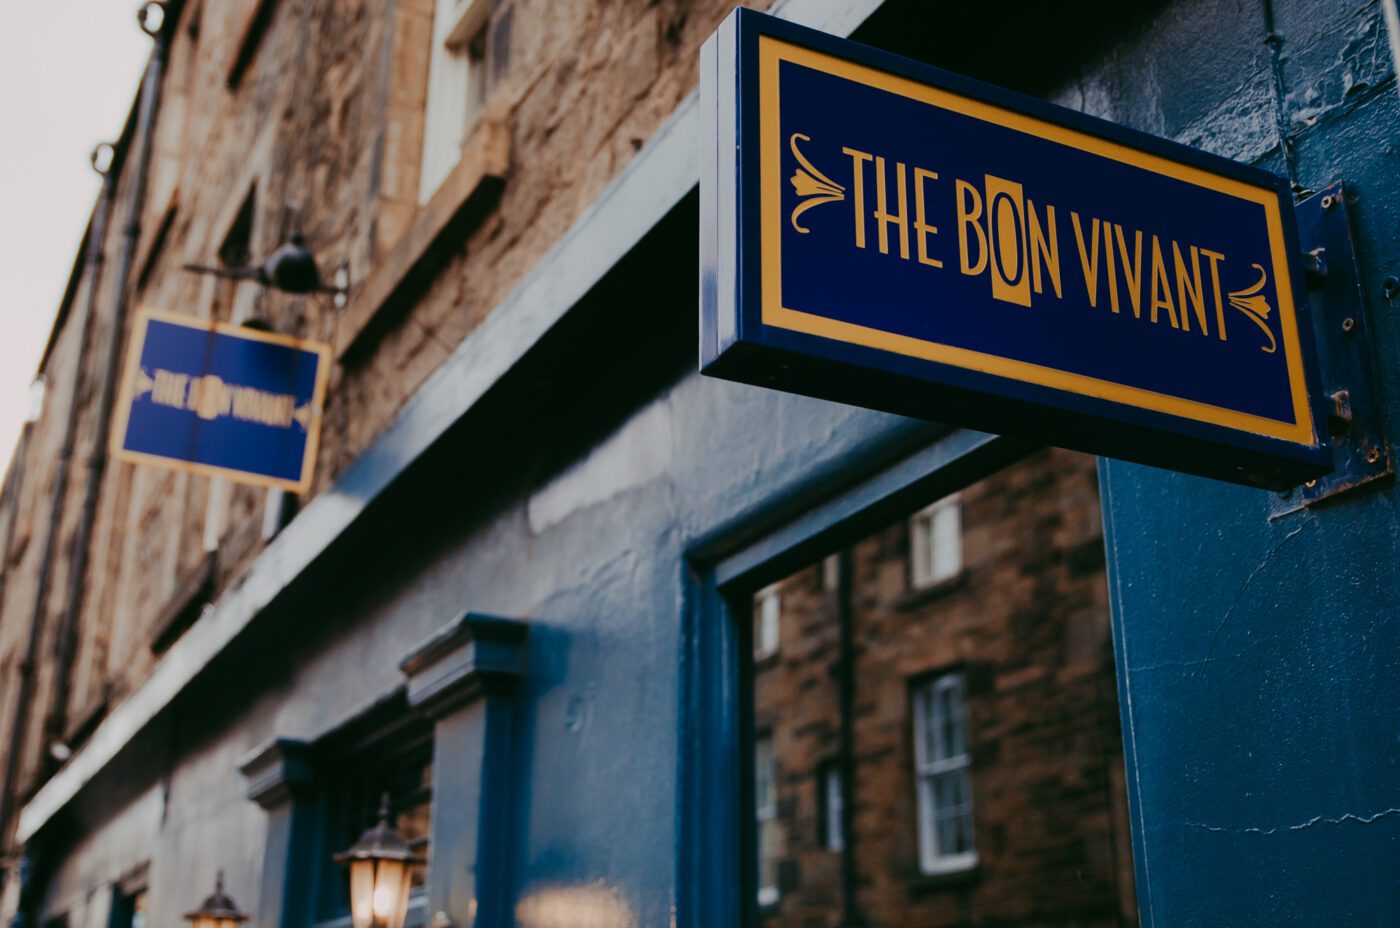 The exterior of the tasting restaurant in Edinburgh: The Bon Vivant